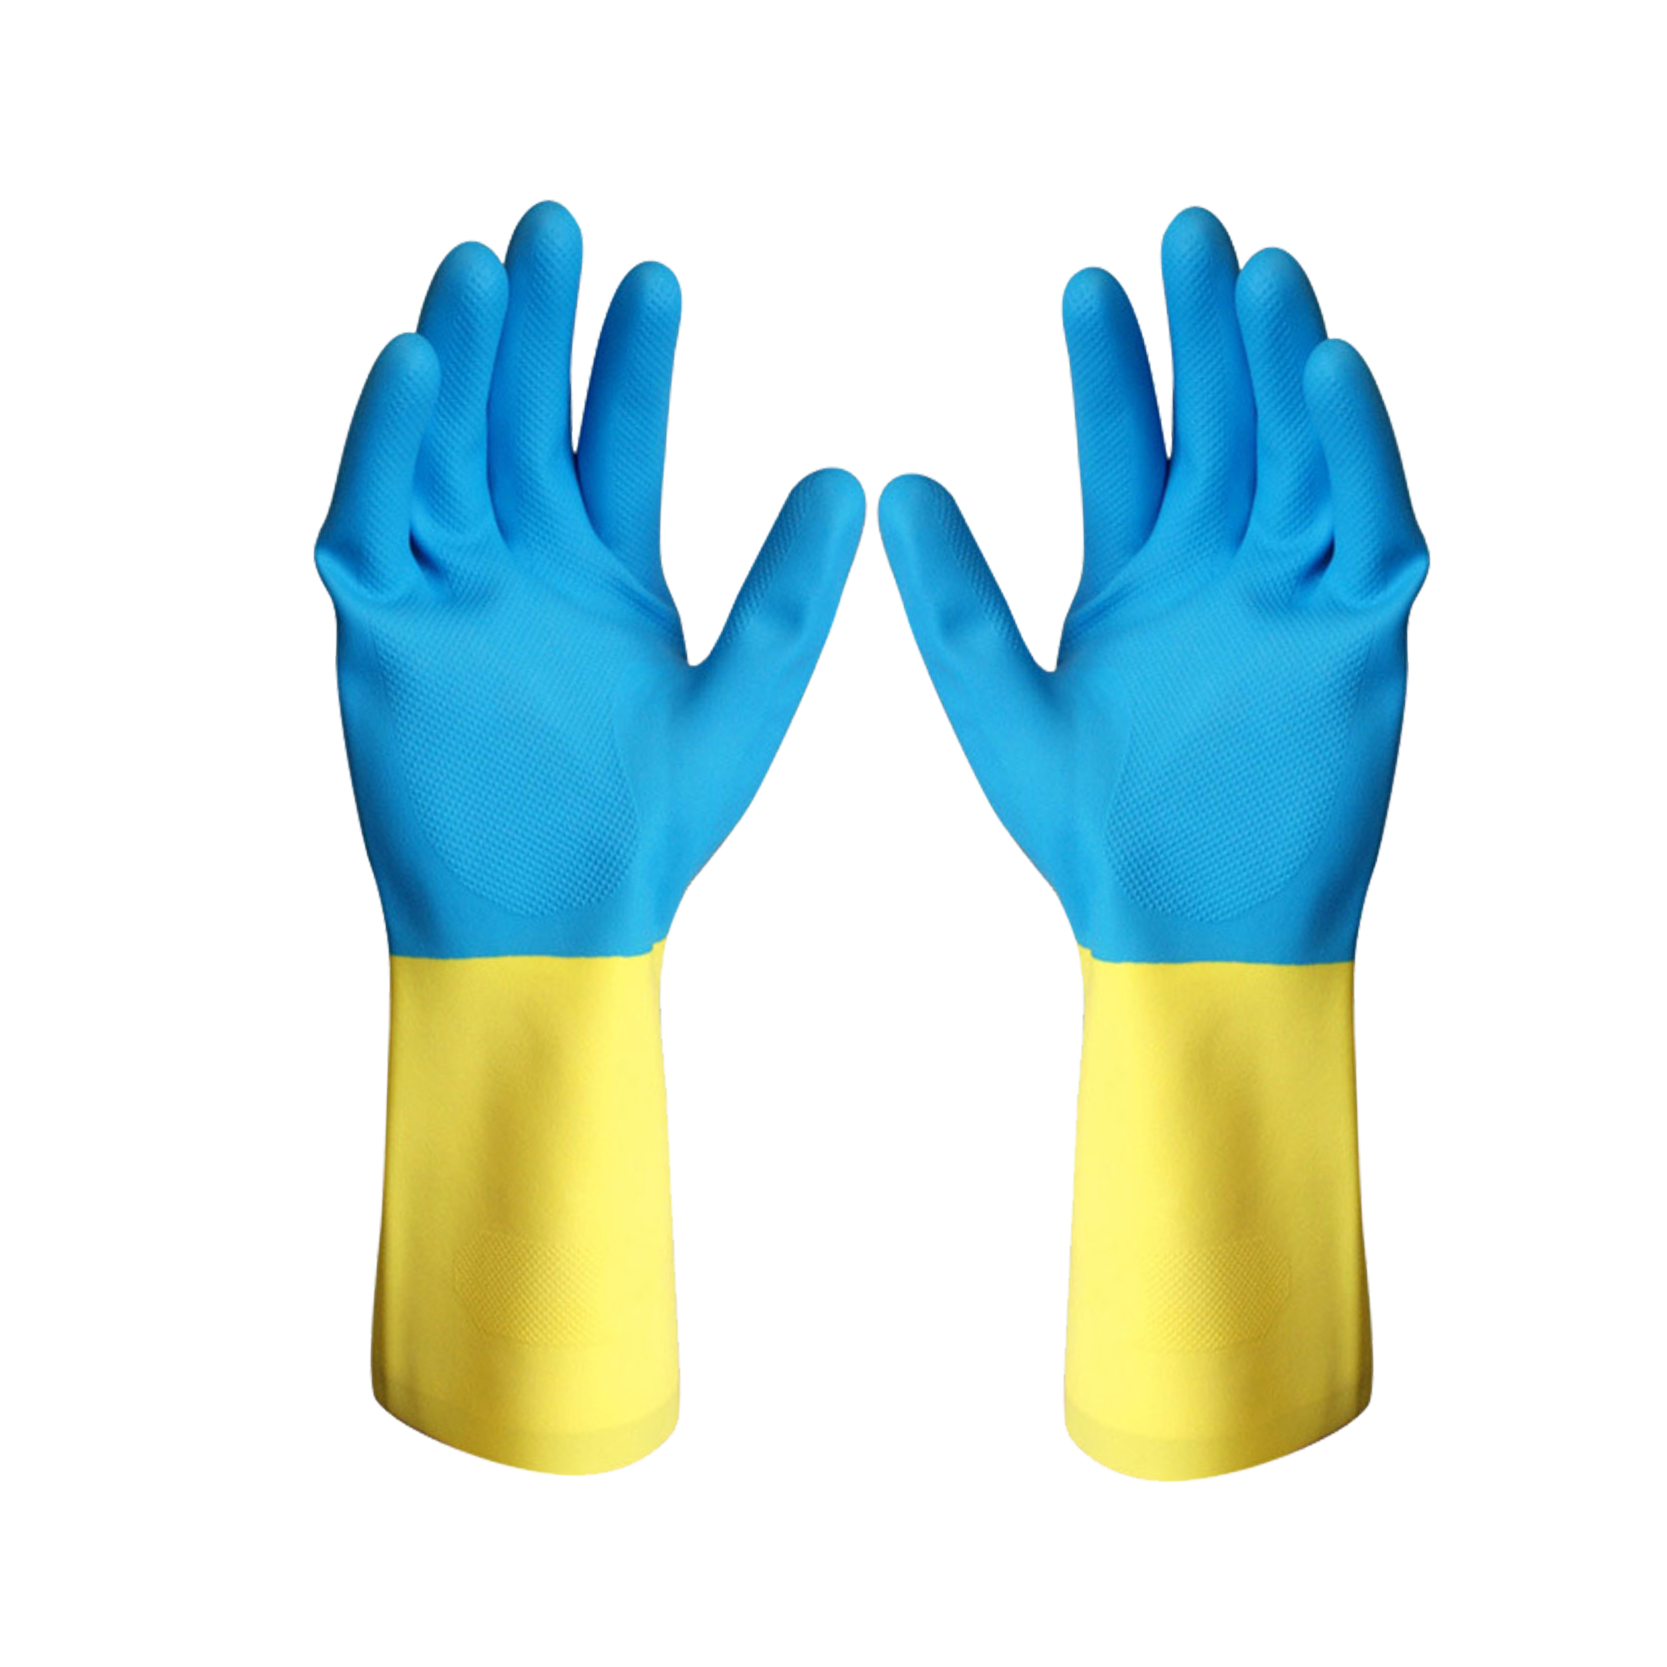 ស្រោមដៃកៅស៊ូជ័រវែងពណ៌ខៀវលឿងប្រើយ៉ាងទូលំទូលាយ Neoprene Industrial Latex Gloves លក់ដុំ